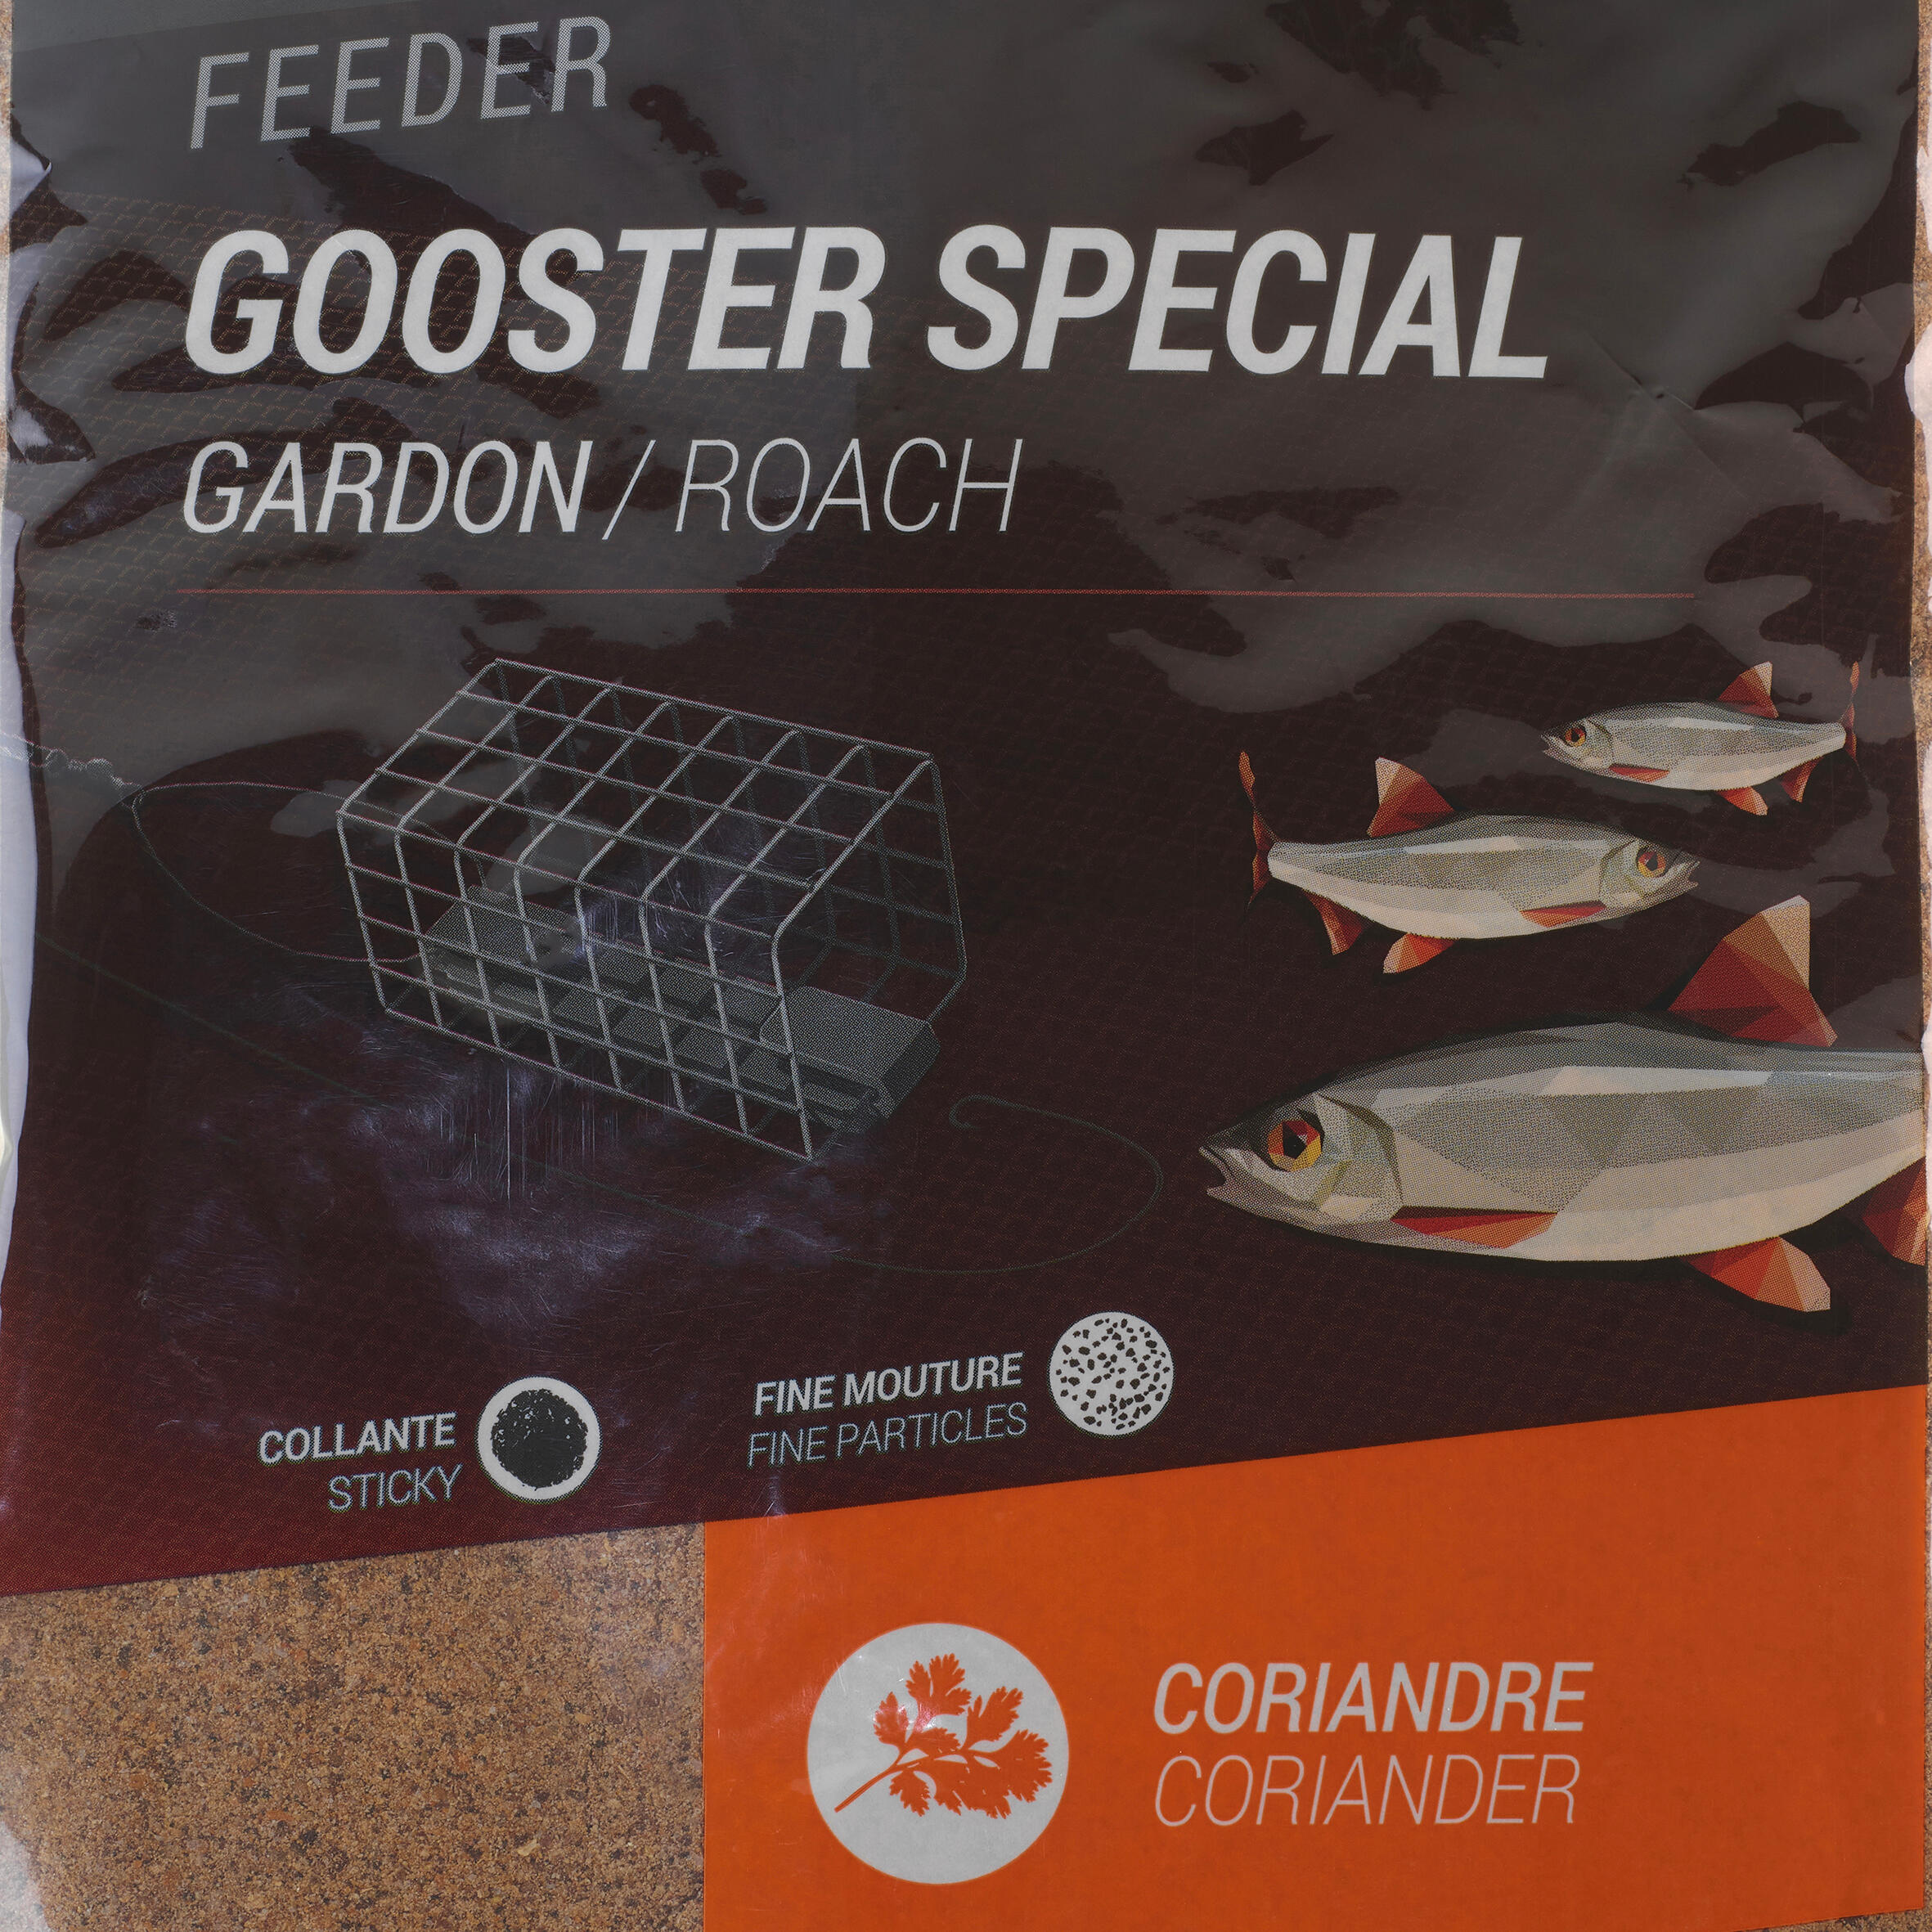 Gooster special roach bait feeder 1 kg 2/6